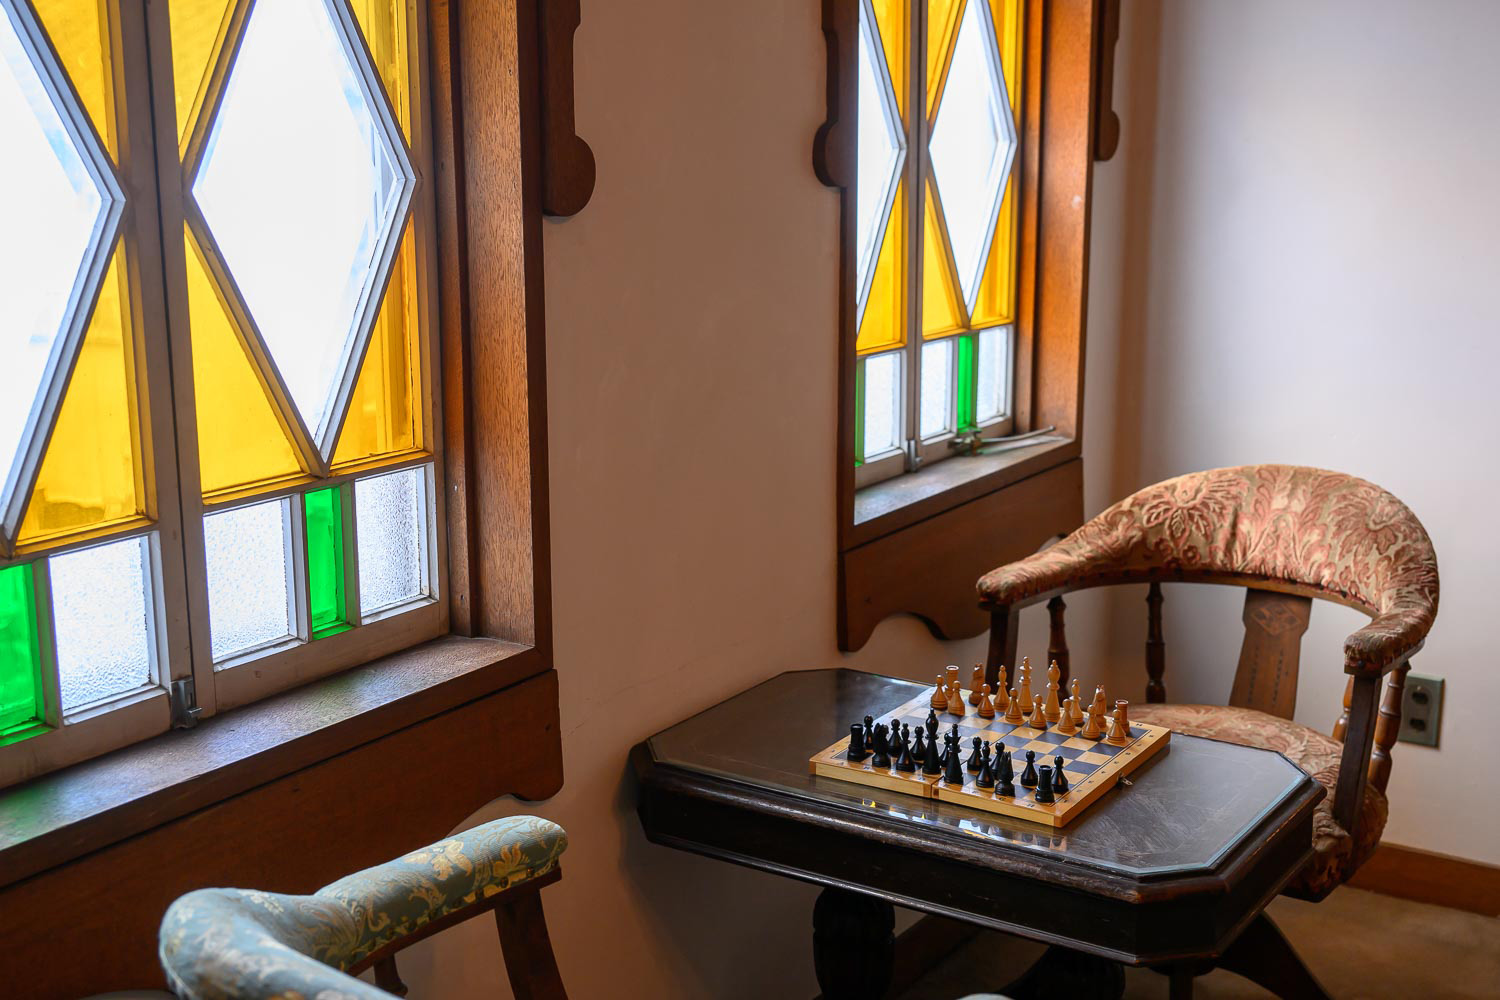 チェスのある窓辺